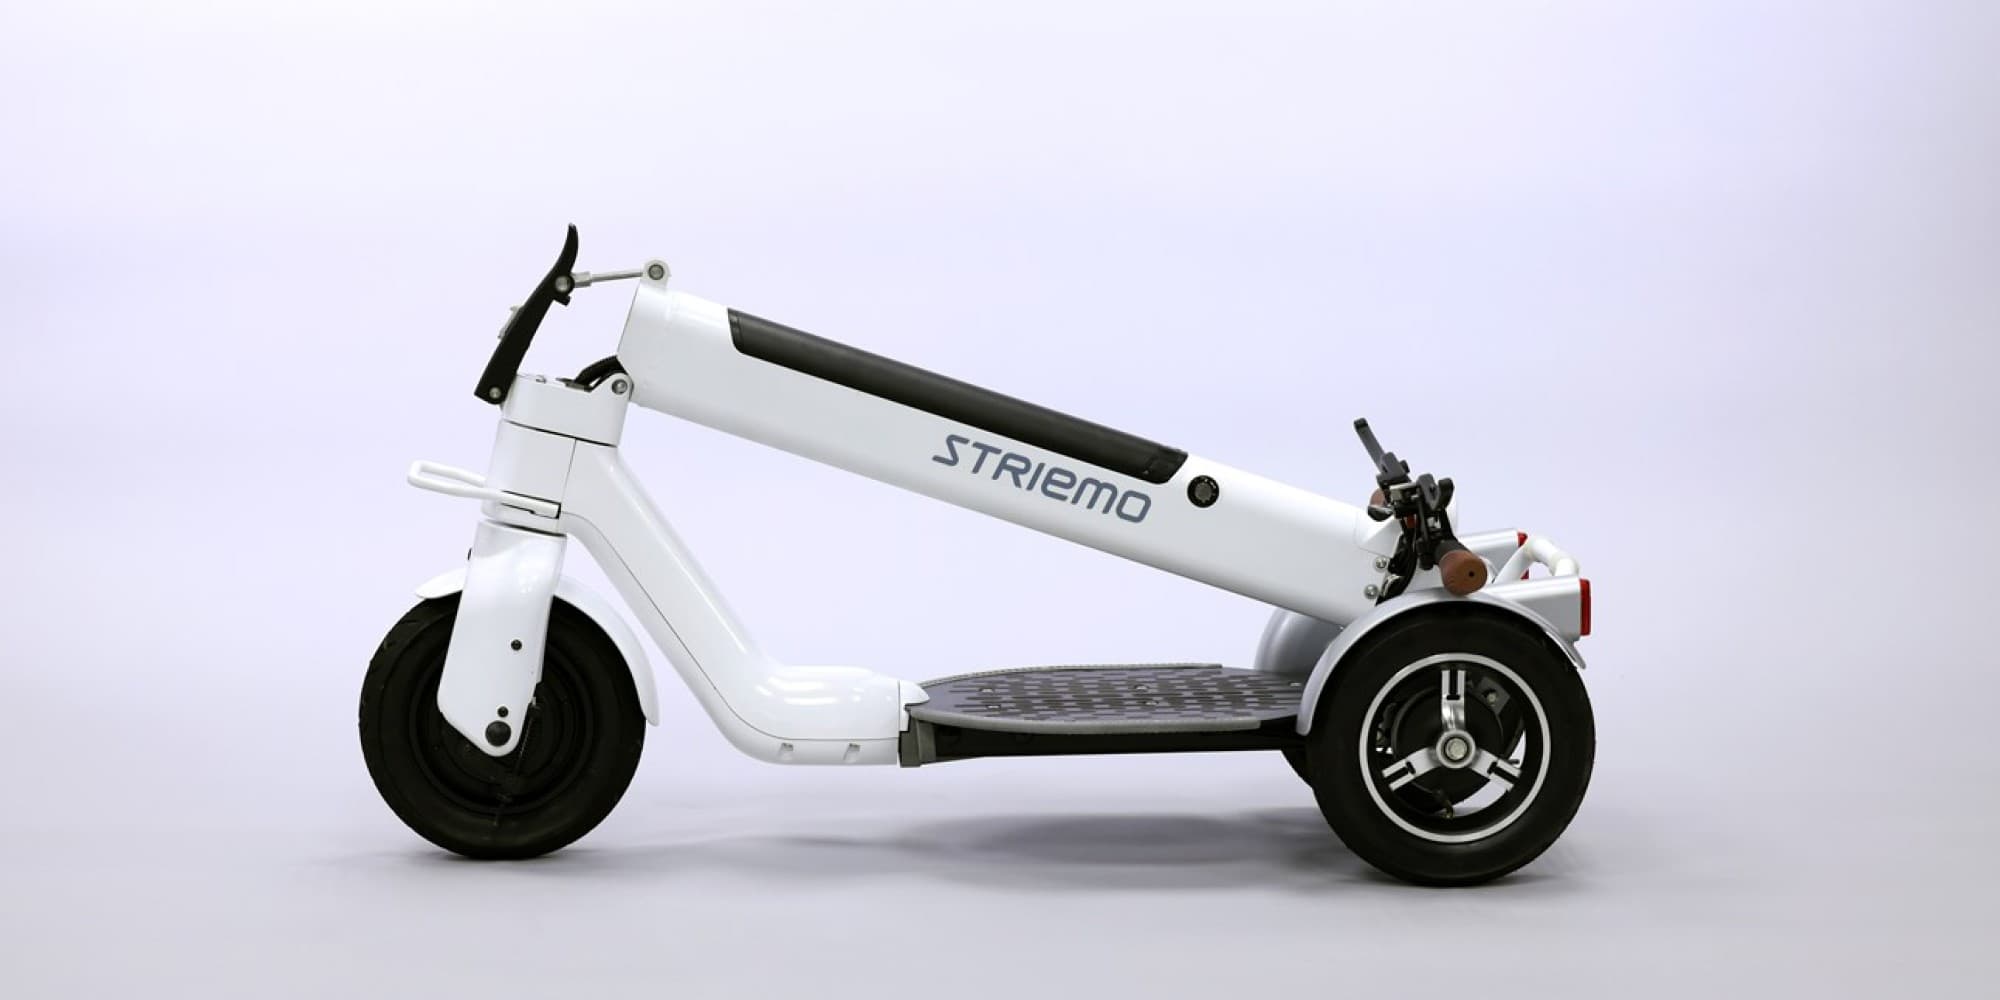 Η Honda ιδρύει την Striemo Inc. και αναπτύσσει ένα τρίτροχο ηλεκτρικό όχημα μικροκινητικότητας